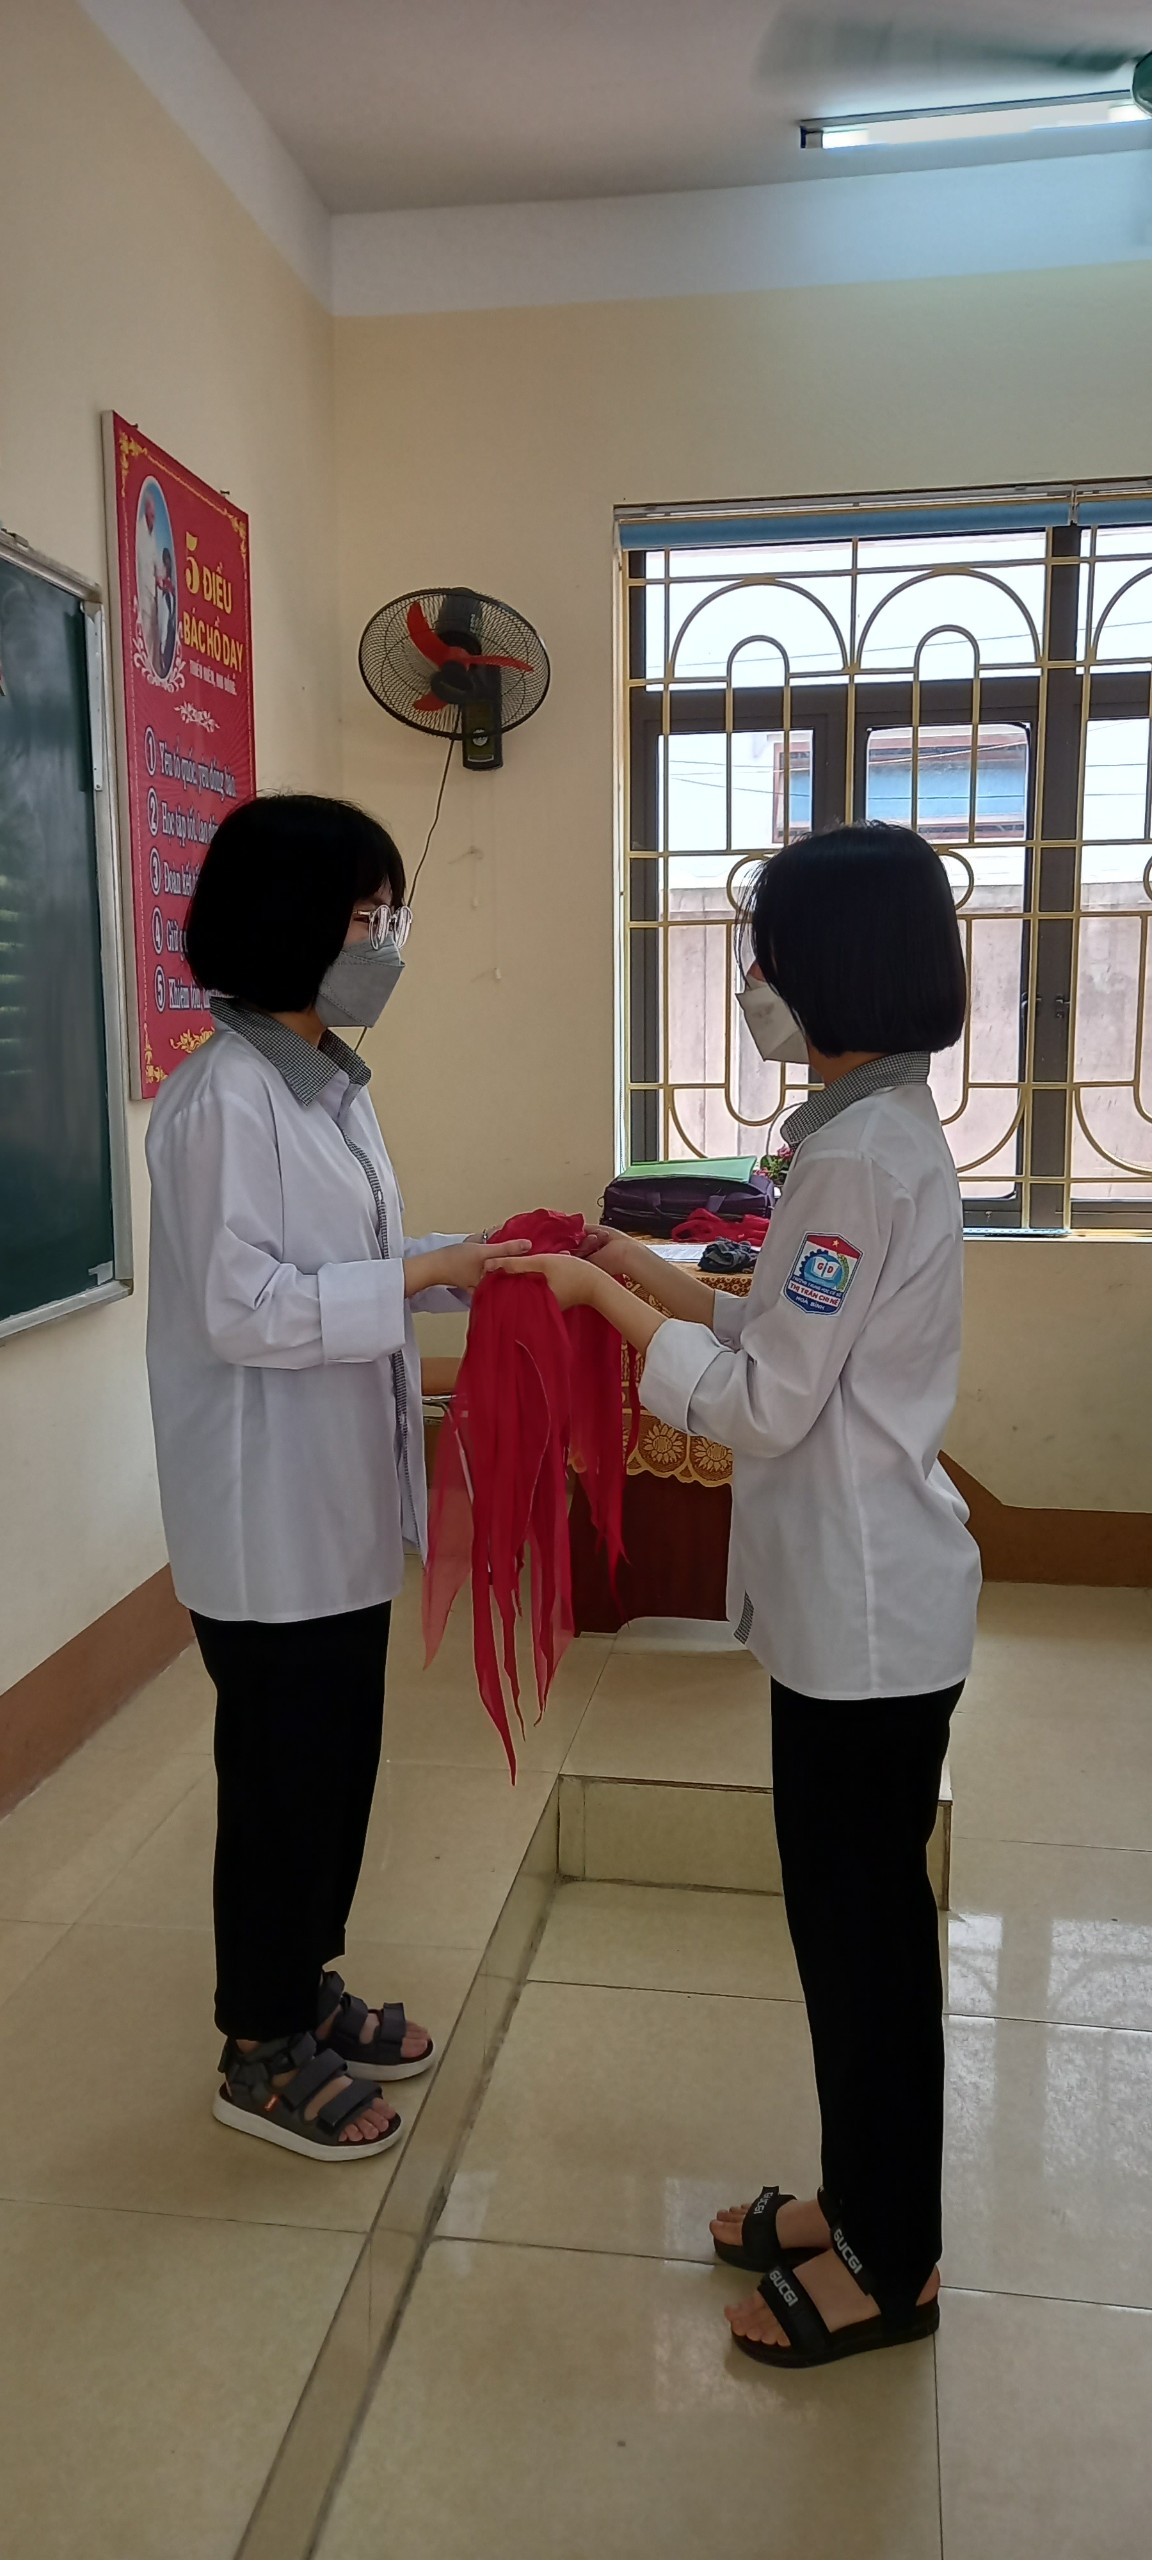 Các em trao lại chiếc khăn quàng đỏ – niềm tự hào của người Đội viên cho lớp đàn em kế tục sự nghiệp vinh quang của Đội TNTP Hồ Chí Minh